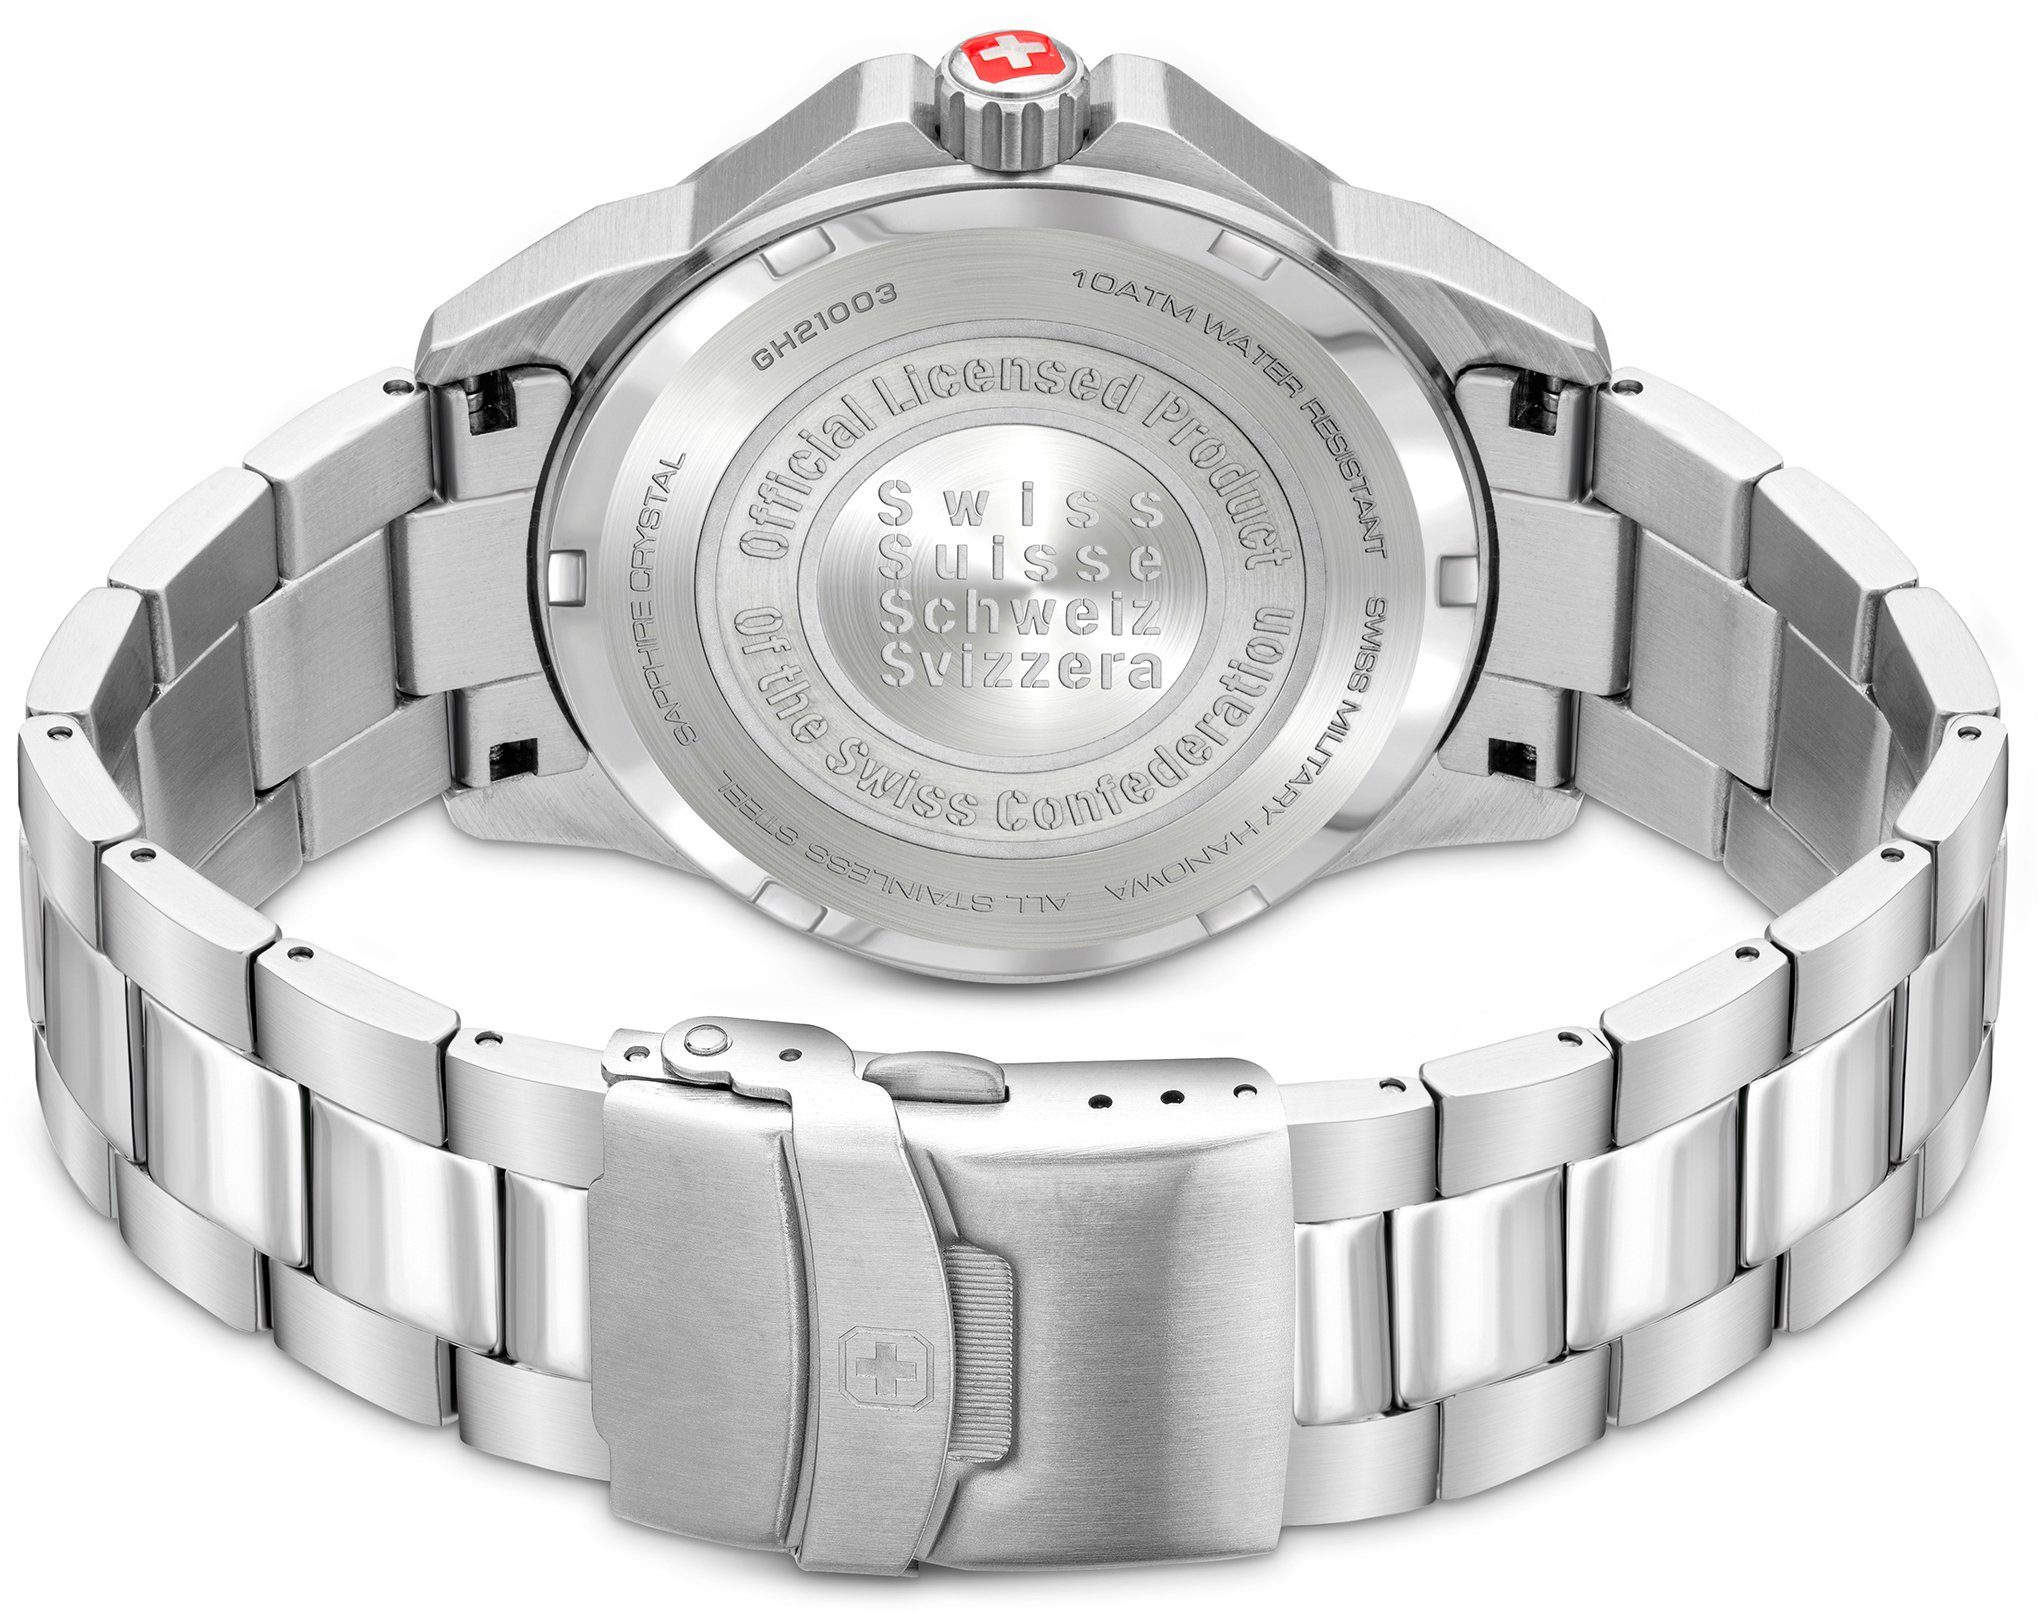 Schweizer Uhr SMWGH2100303 PUMA, Swiss Hanowa Military schwarz